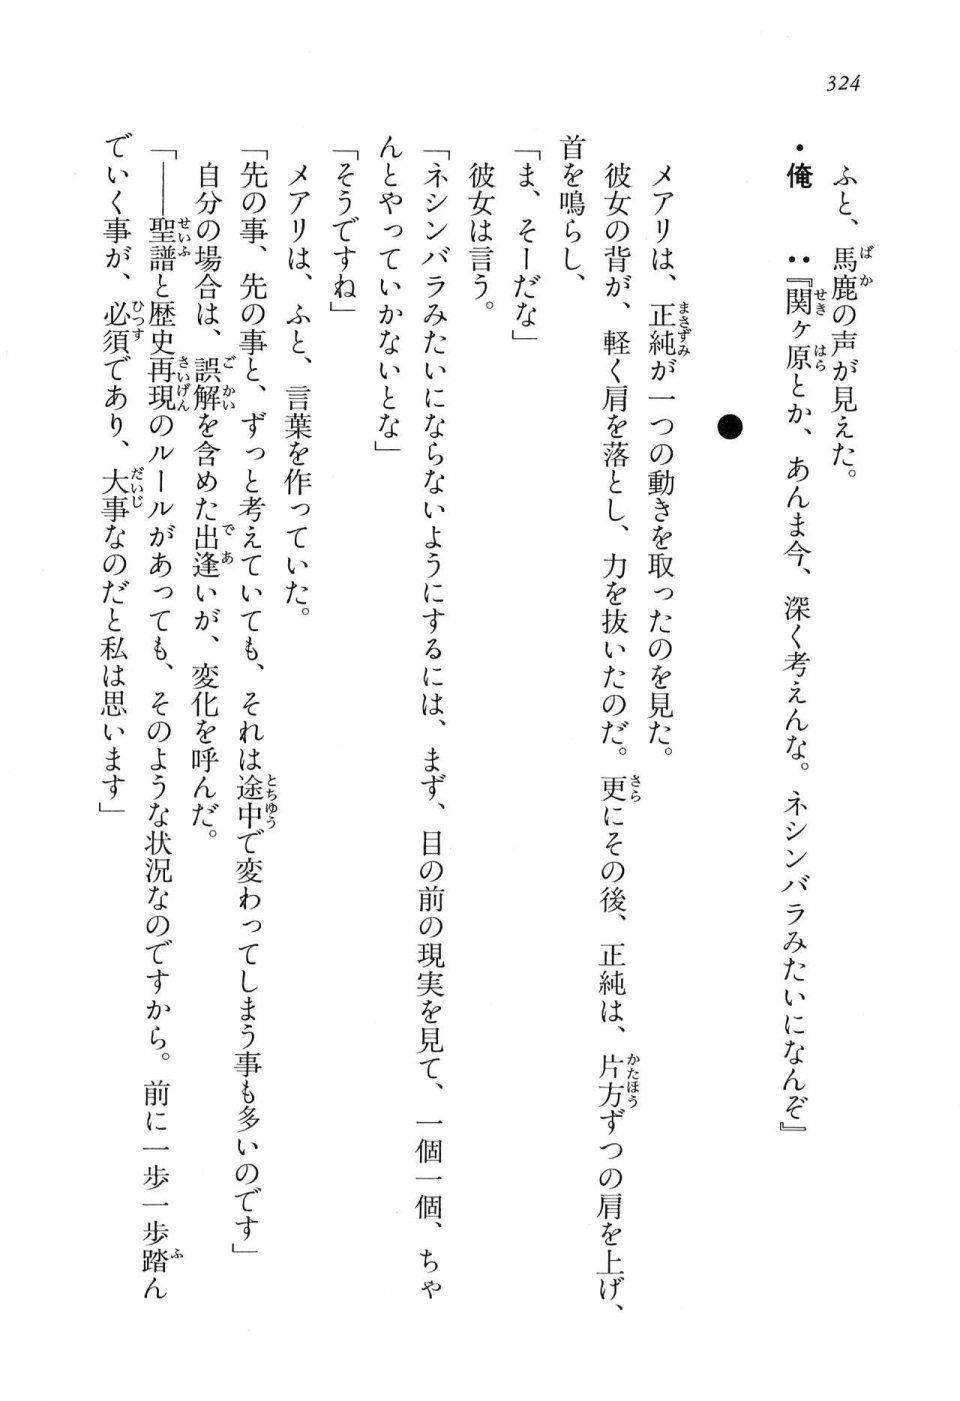 Kyoukai Senjou no Horizon LN Vol 16(7A) - Photo #324